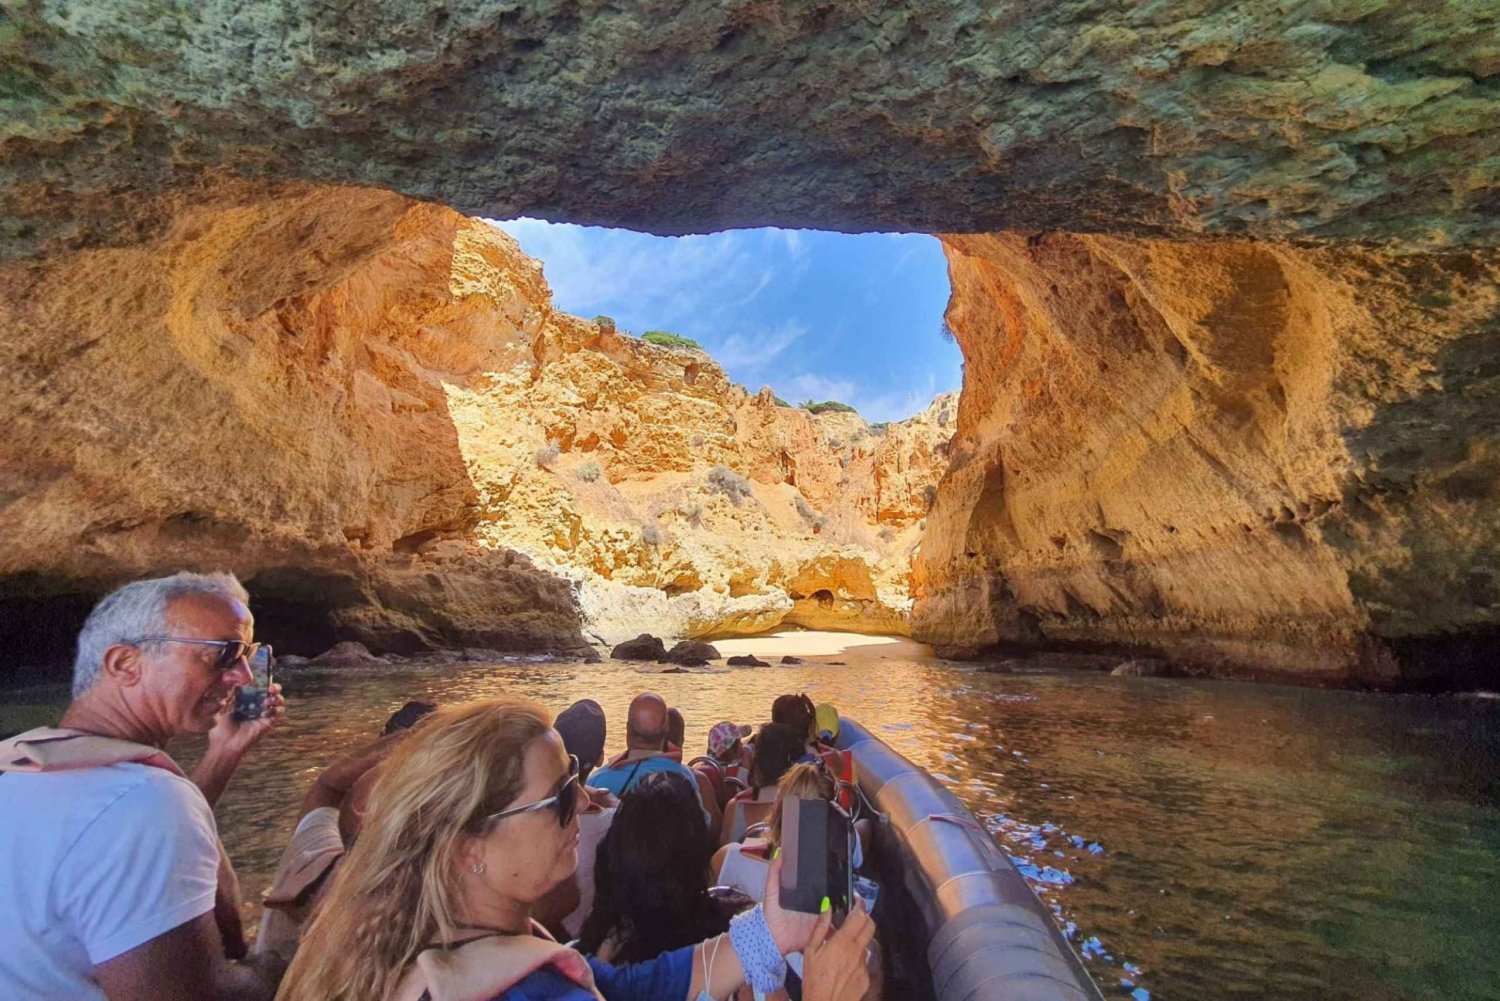 Portimão: Geführte Höhlentour an der Küste mit dem Boot